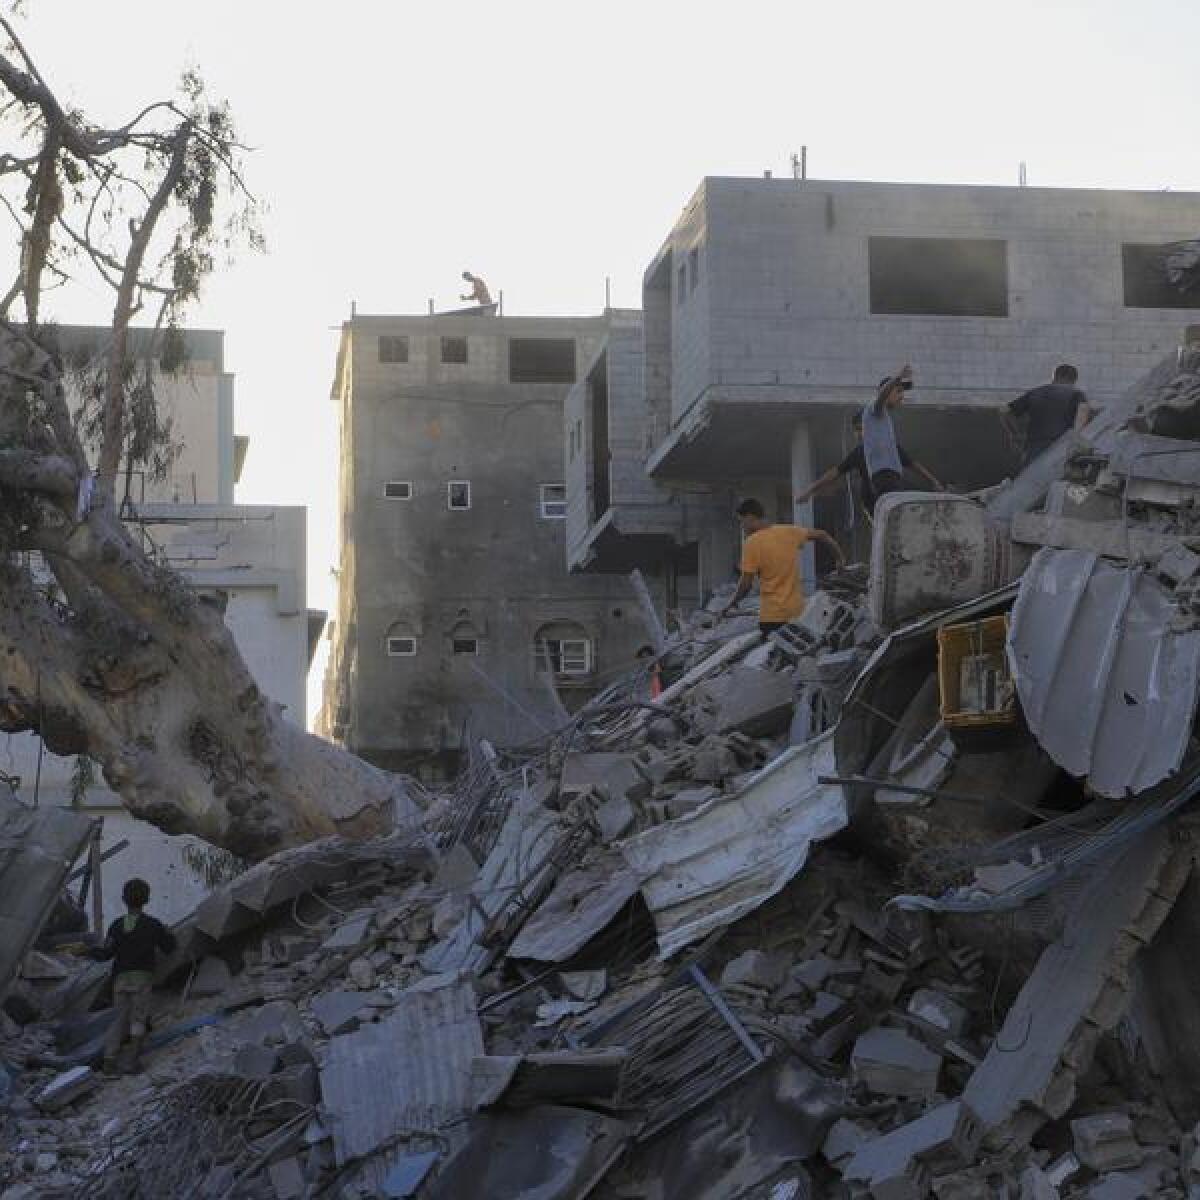 Buildings destroyed in an Israeli air strike in Gaza